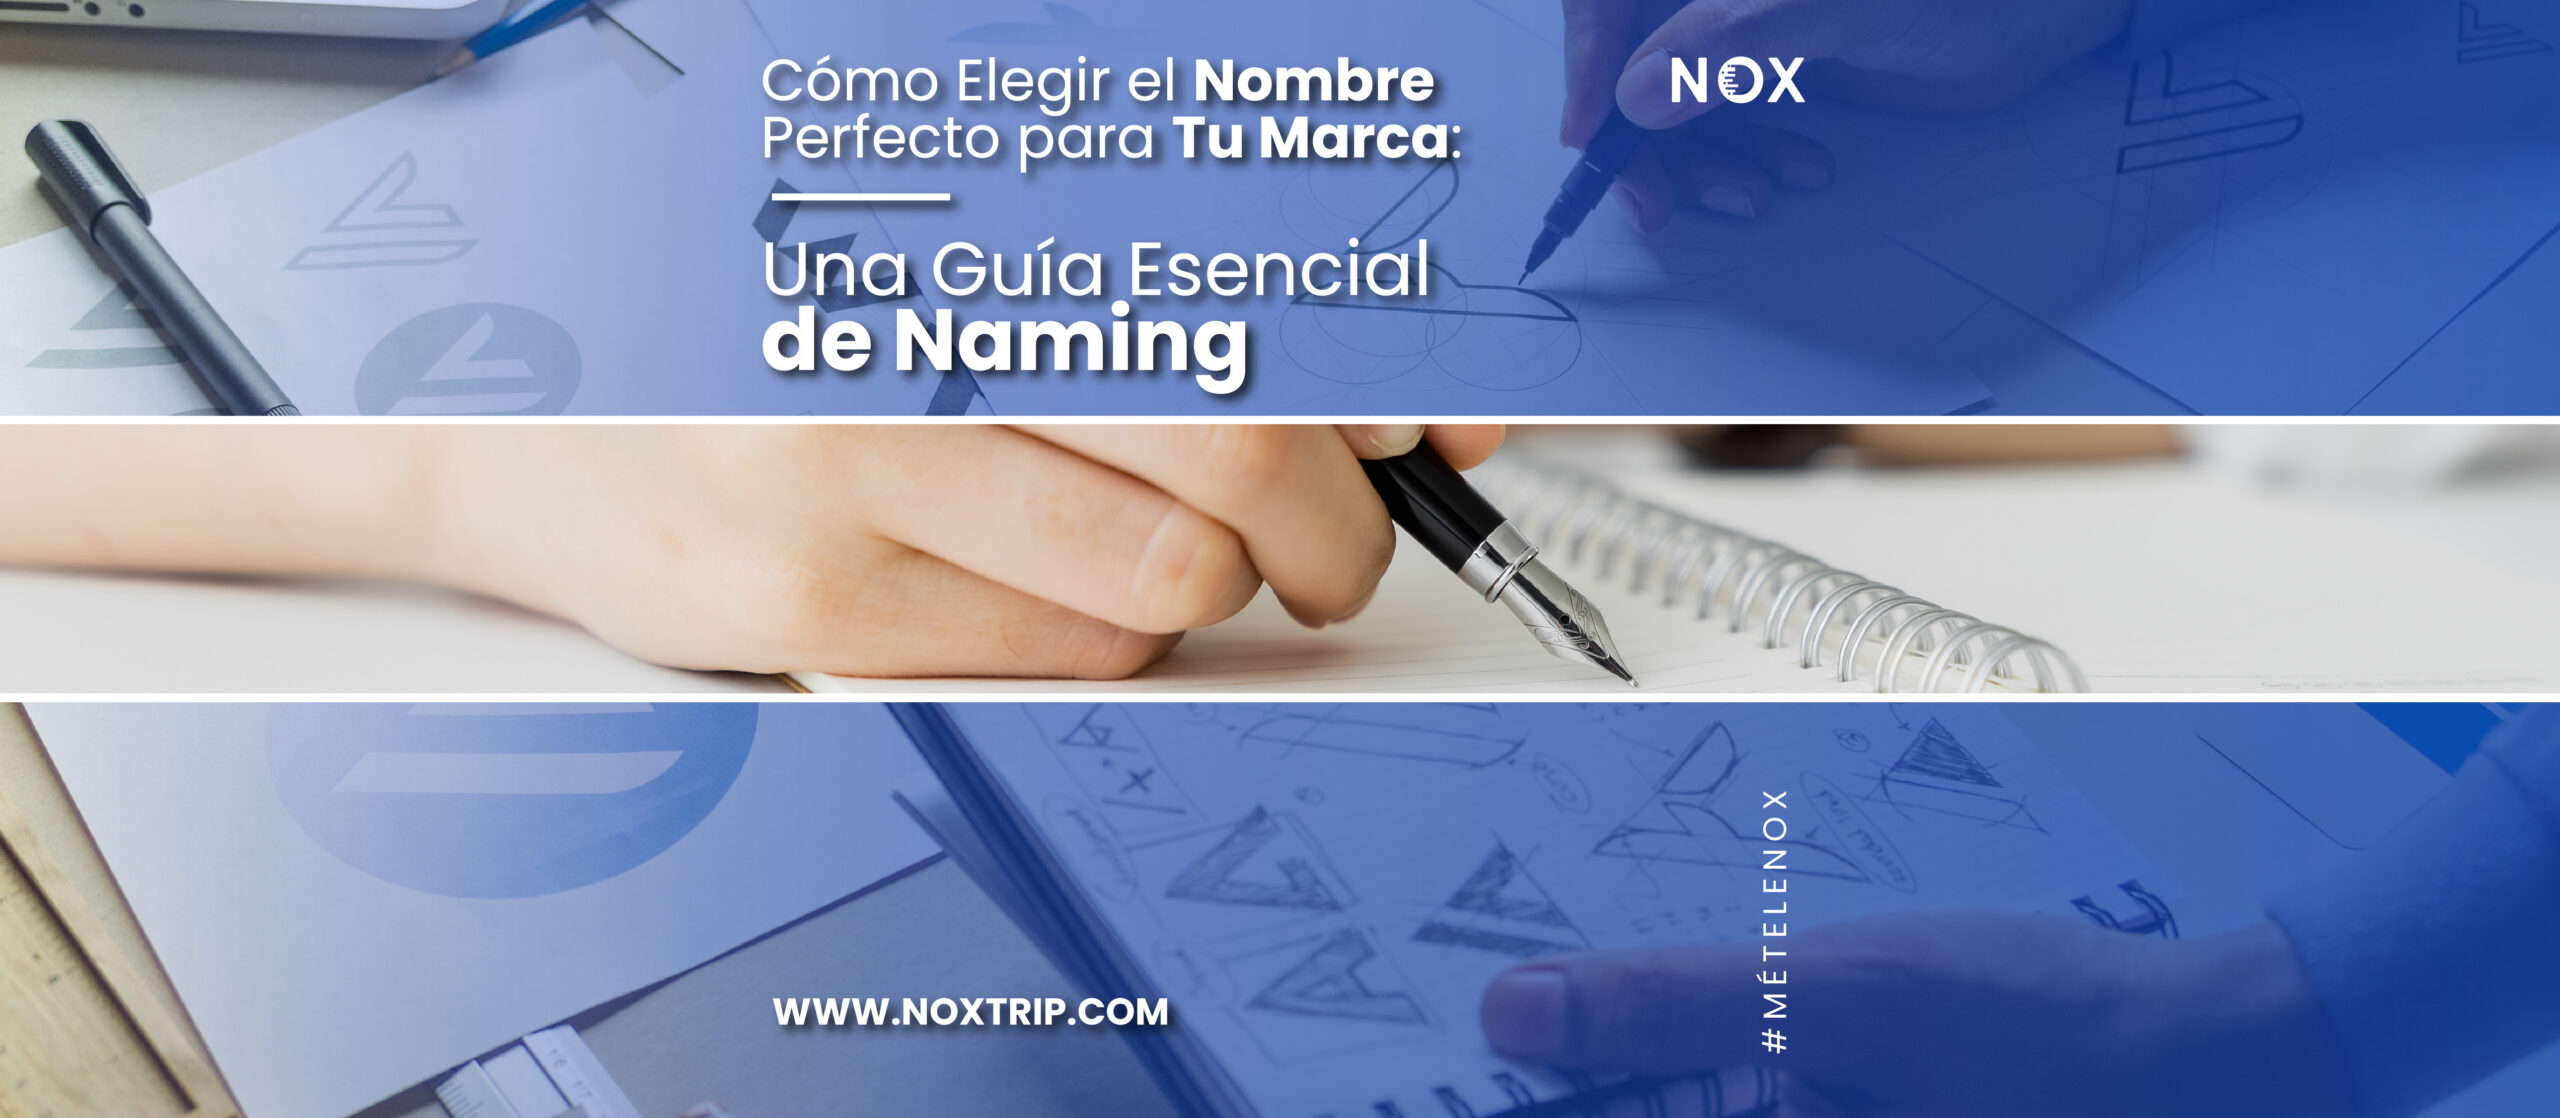 Nox marketing digital - Cómo Elegir el Nombre Perfecto para Tu Marca Una Guía Esencial de Naming